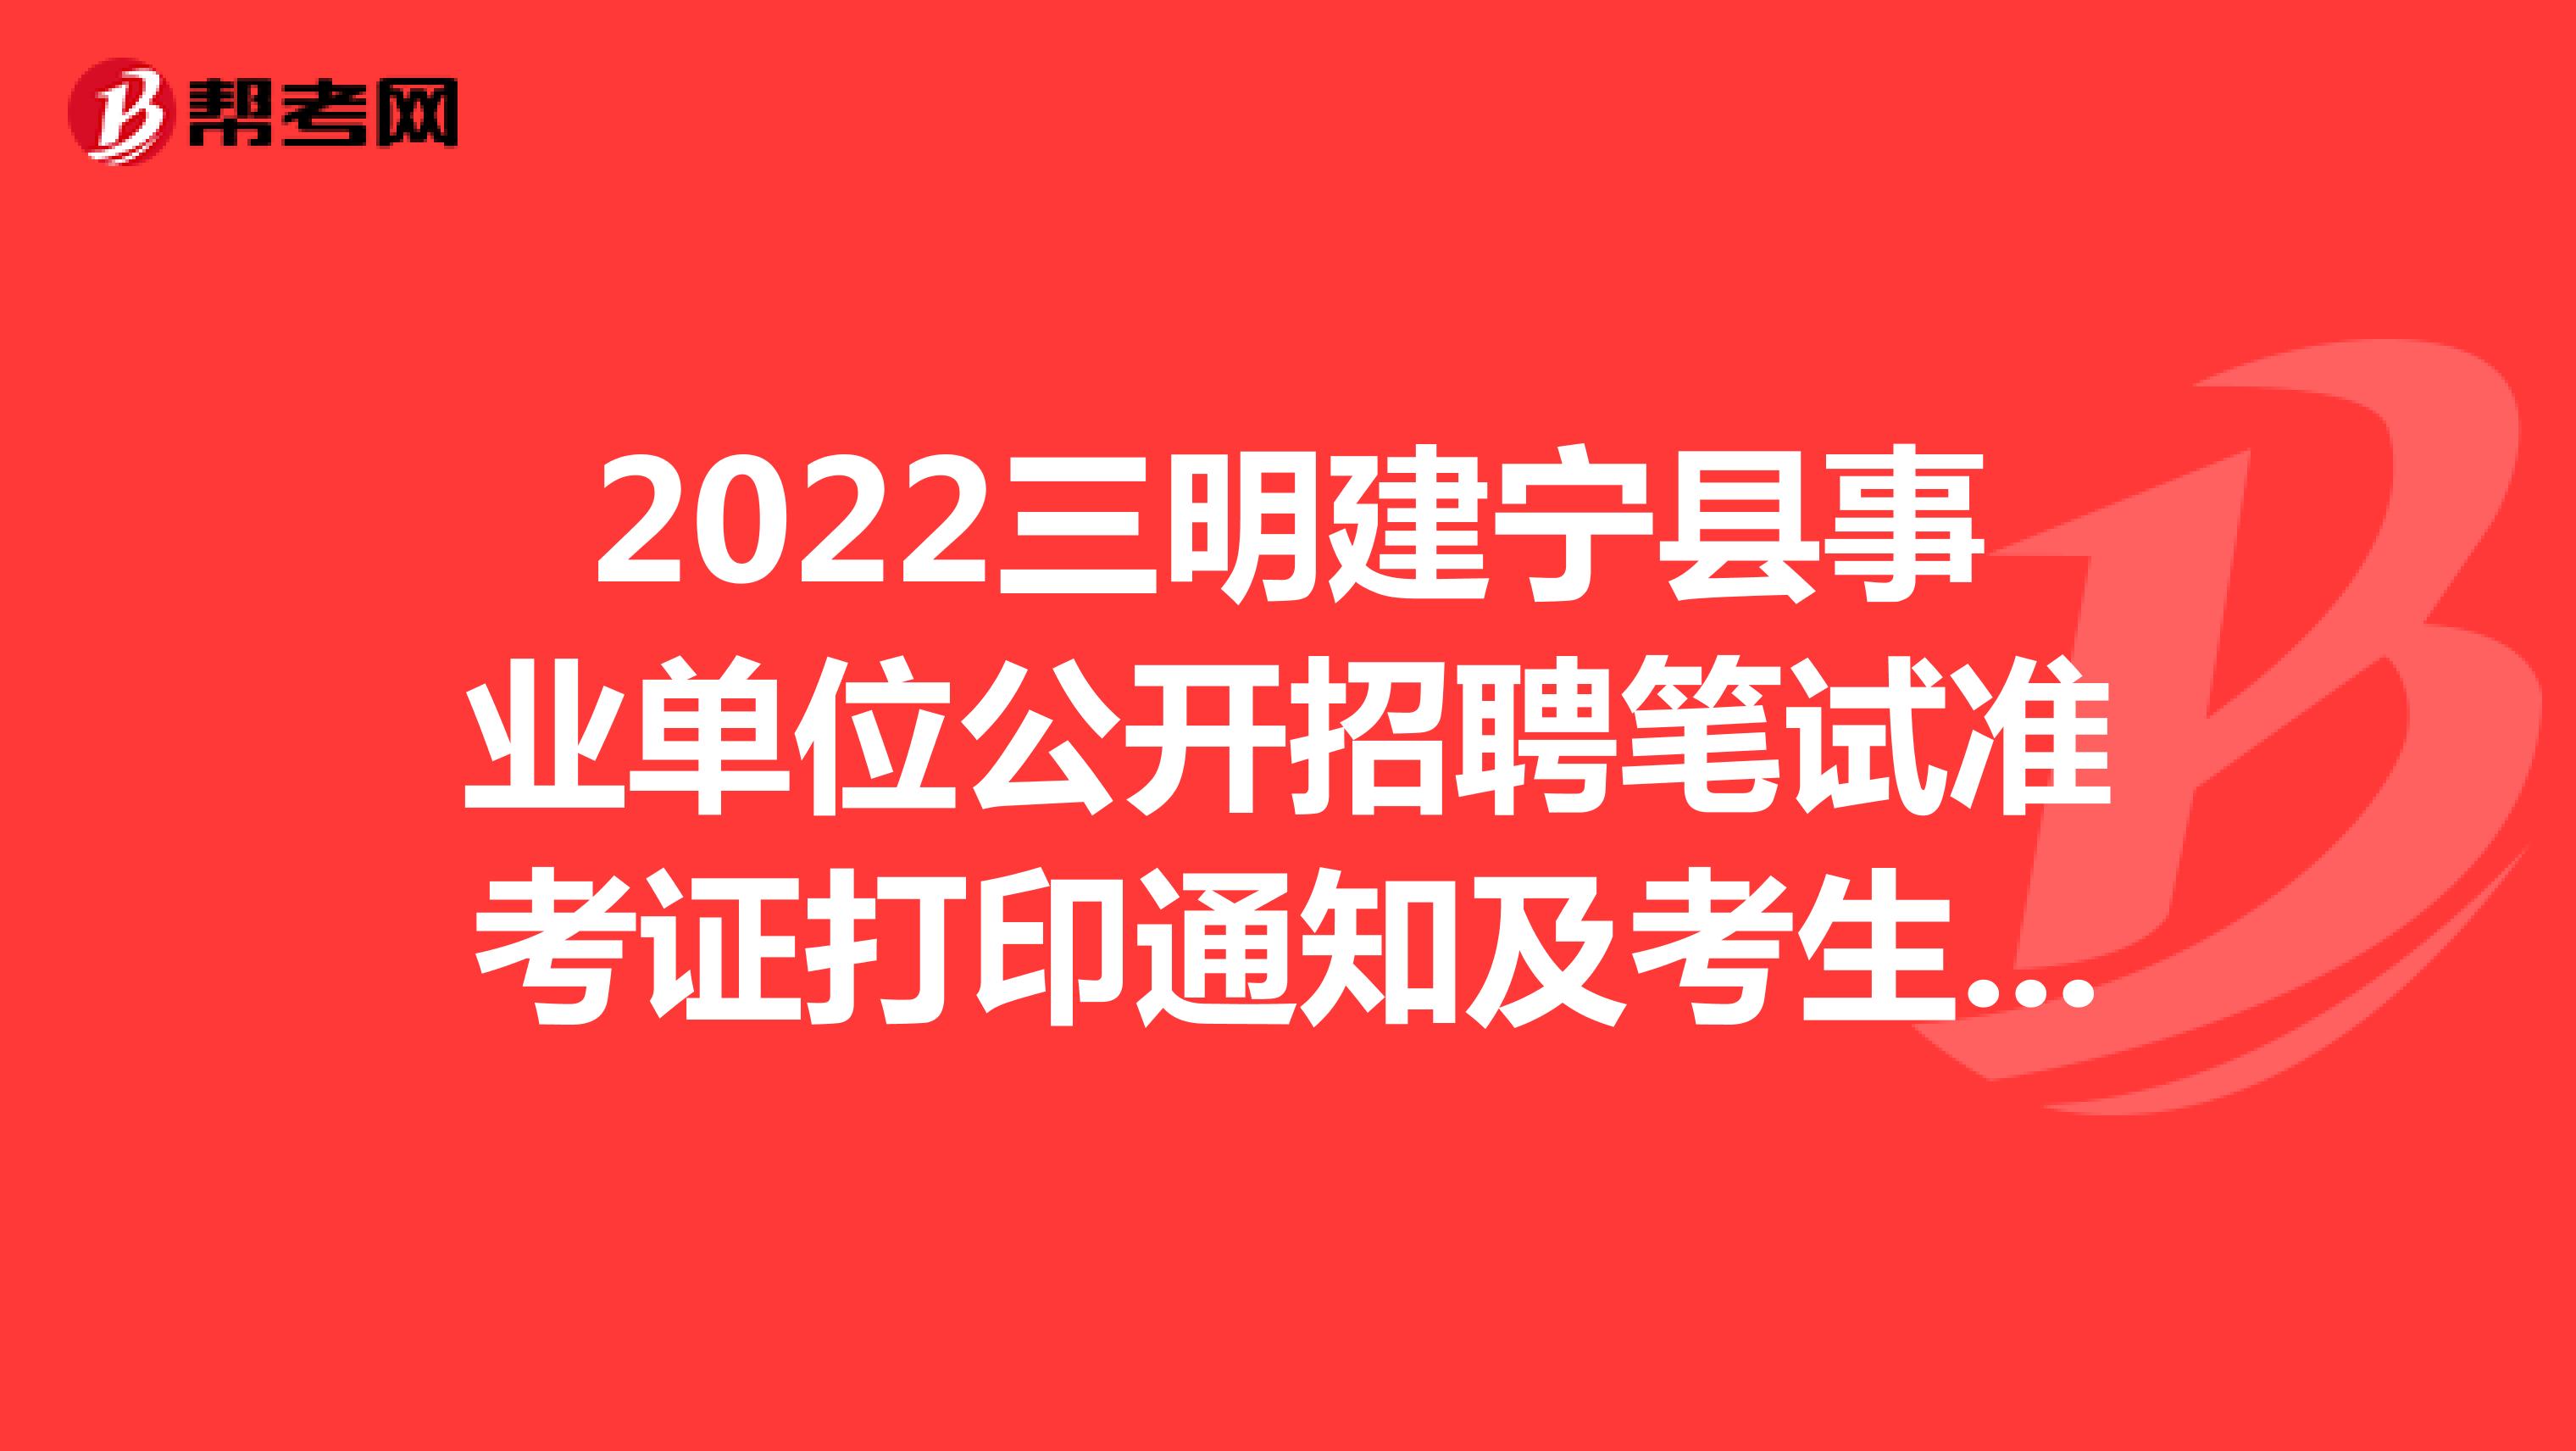 2022三明建宁县事业单位公开招聘笔试准考证打印通知及考生防疫须知